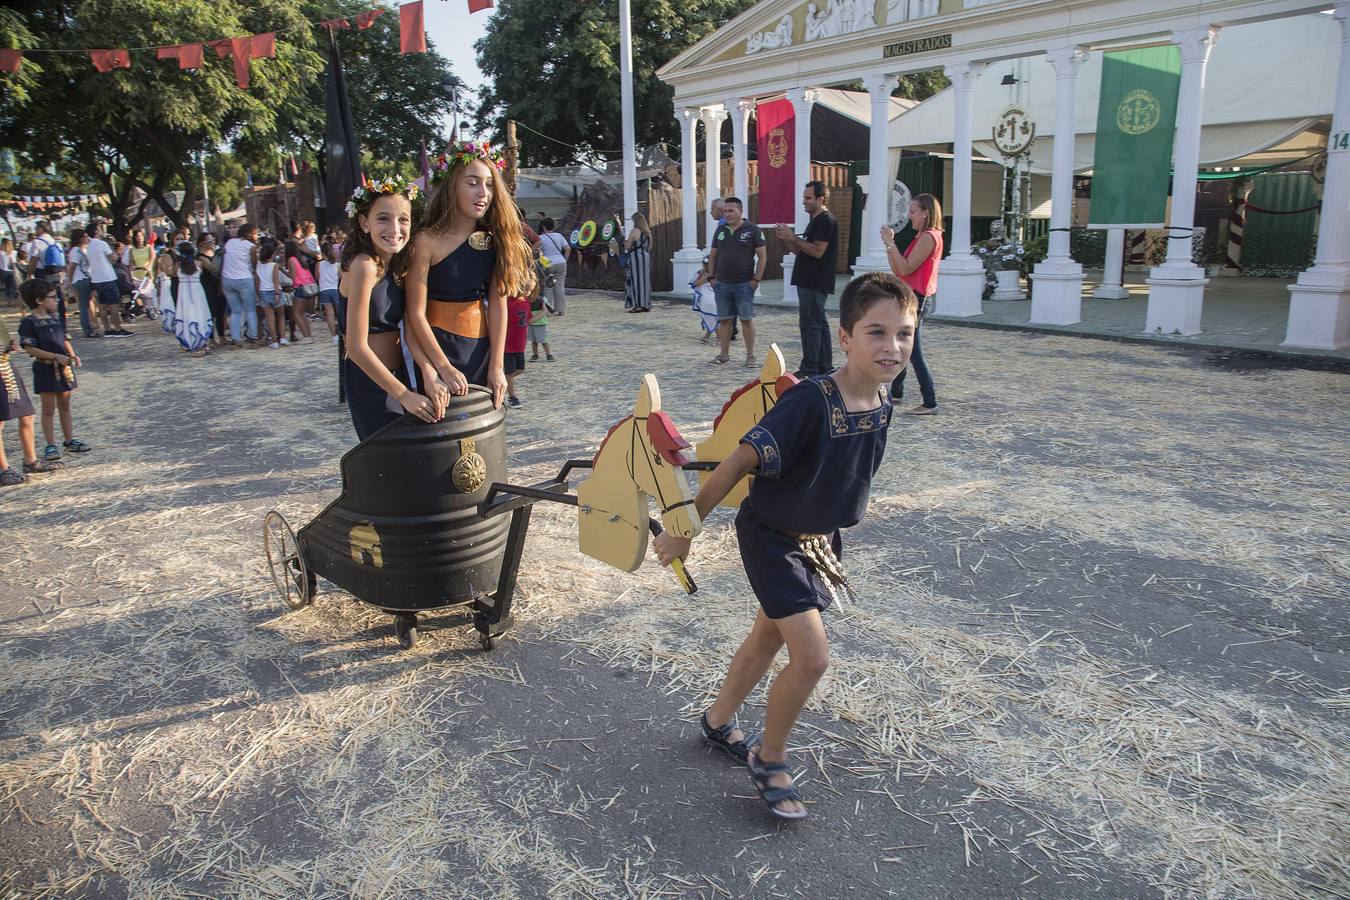 Los juegos de habilidad en las calles romana y carthaginesa, más numerosos y trabajados, superan en afluencia a los del año pasado en las fiestas de Cartagena 